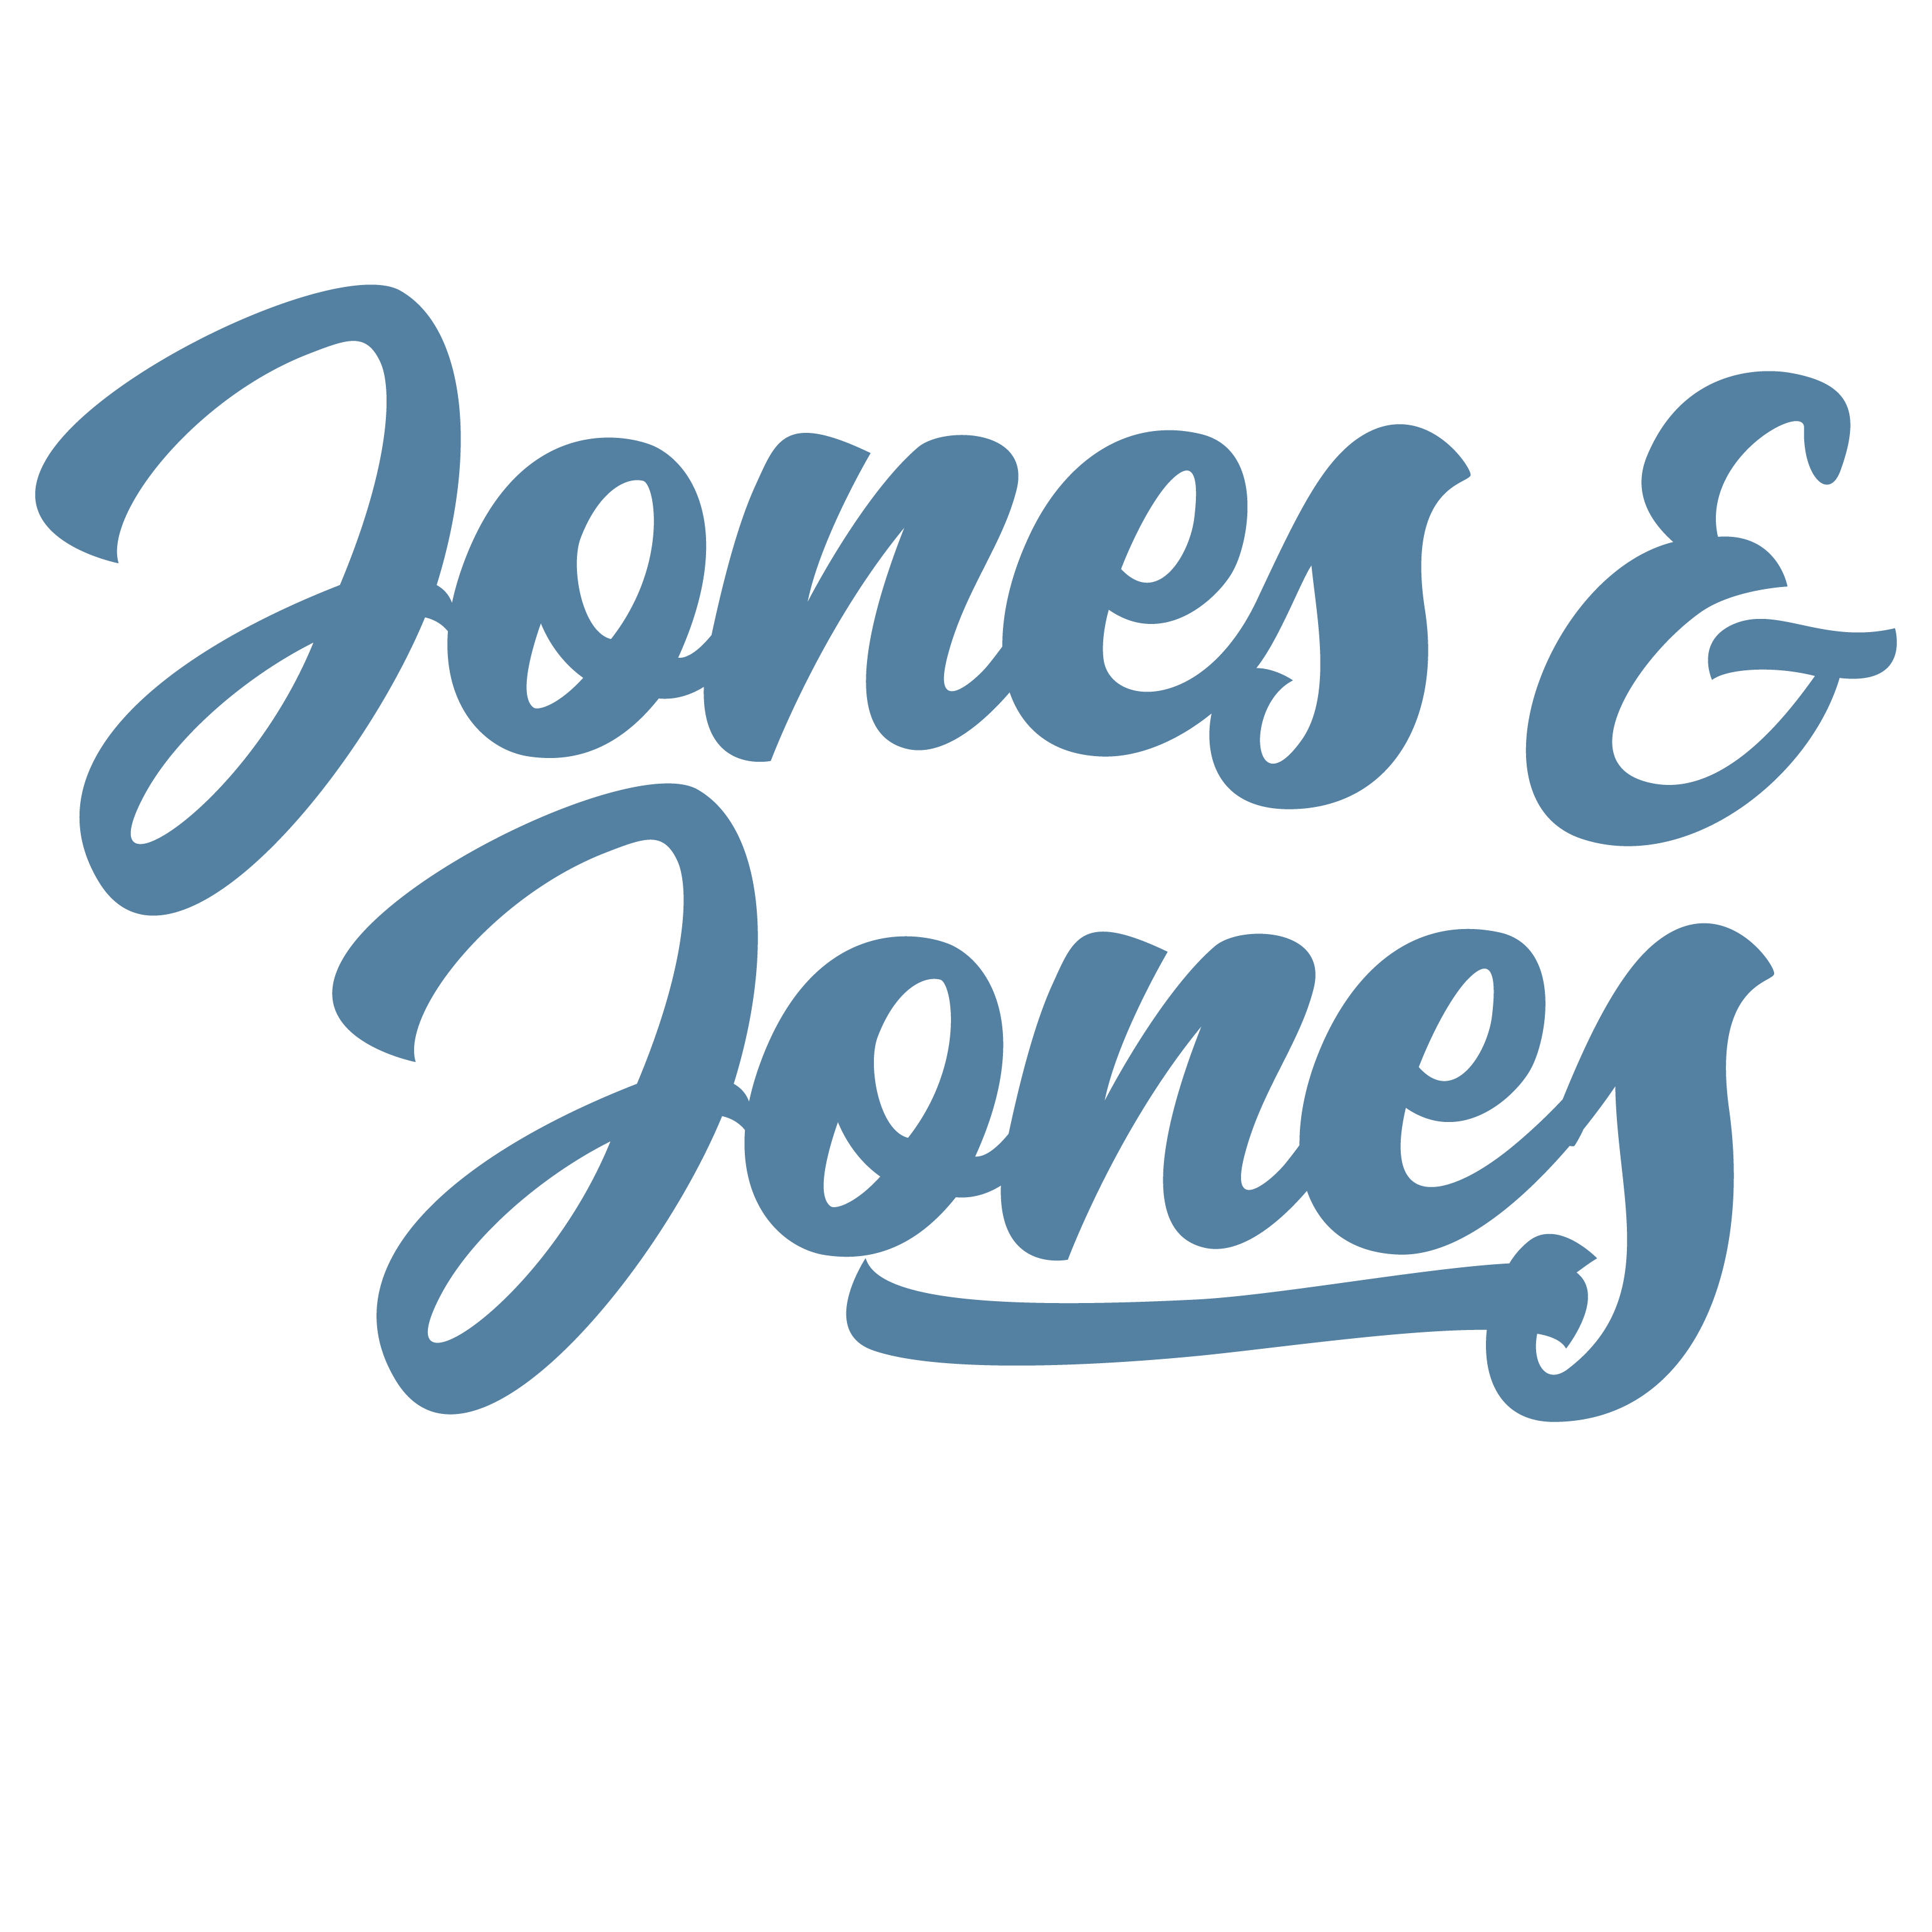 Jones & Jones Insurance